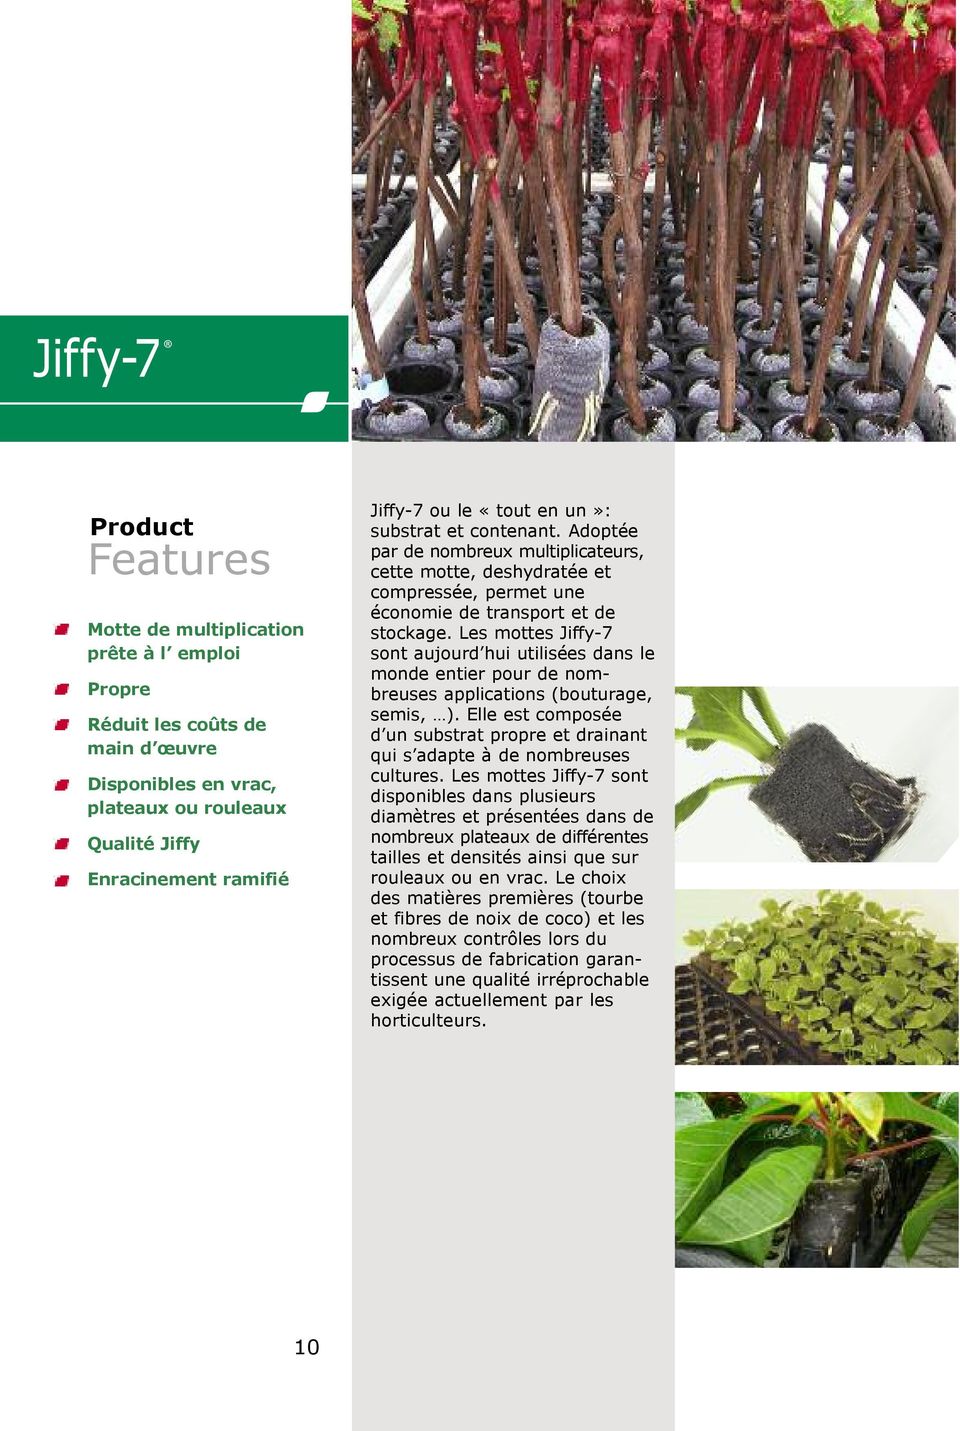 Les mottes Jiffy-7 sont aujourd hui utilisées dans le monde entier pour de nombreuses applications (bouturage, semis, ).